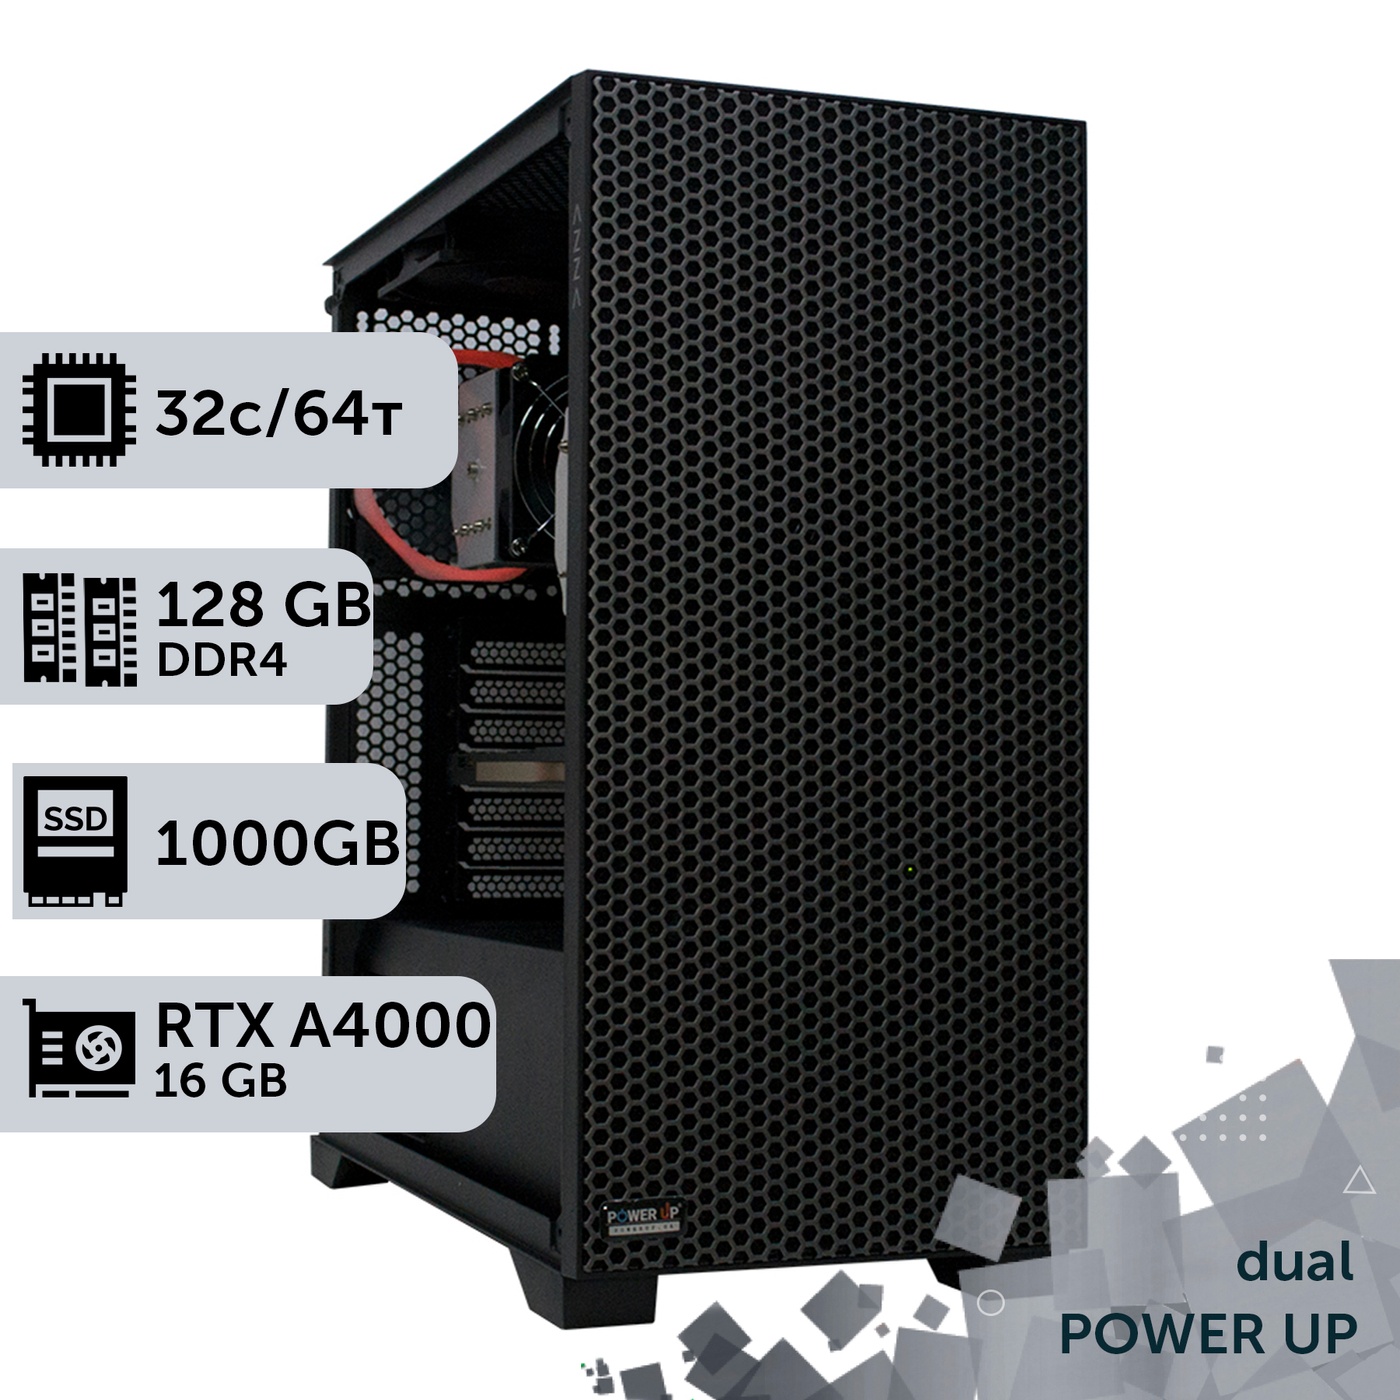 Двухпроцессорная рабочая станция PowerUp #396 AMD EPYC 7F52 x2/128 GB/SSD 1TB/NVIDIA Quadro RTX A4000 16GB